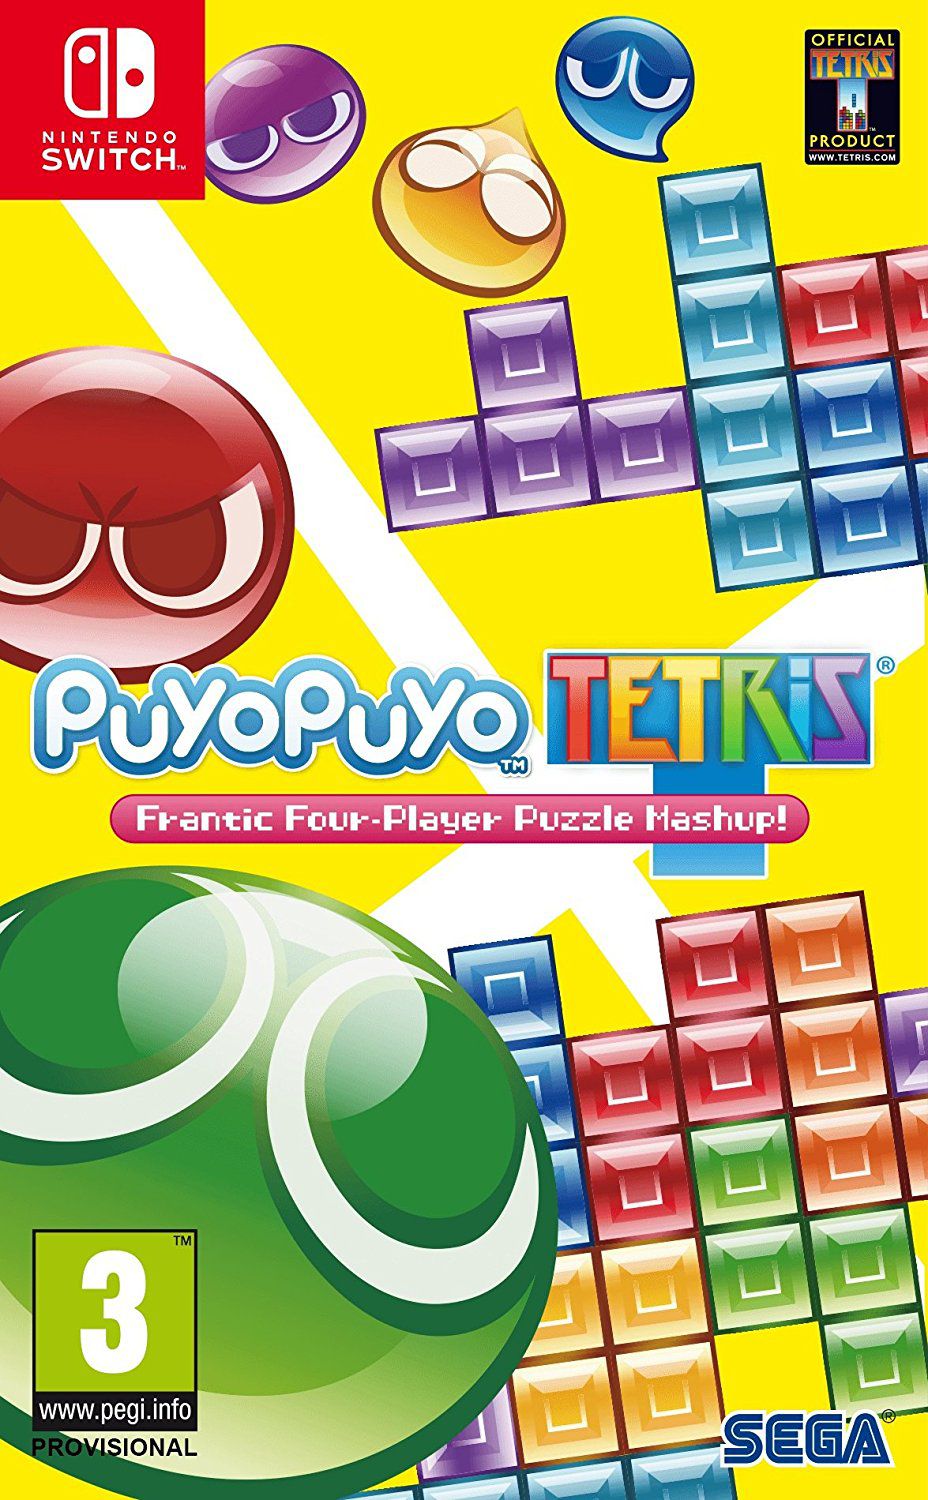 jaquette reduite de Puyo Puyo Tetris sur Switch